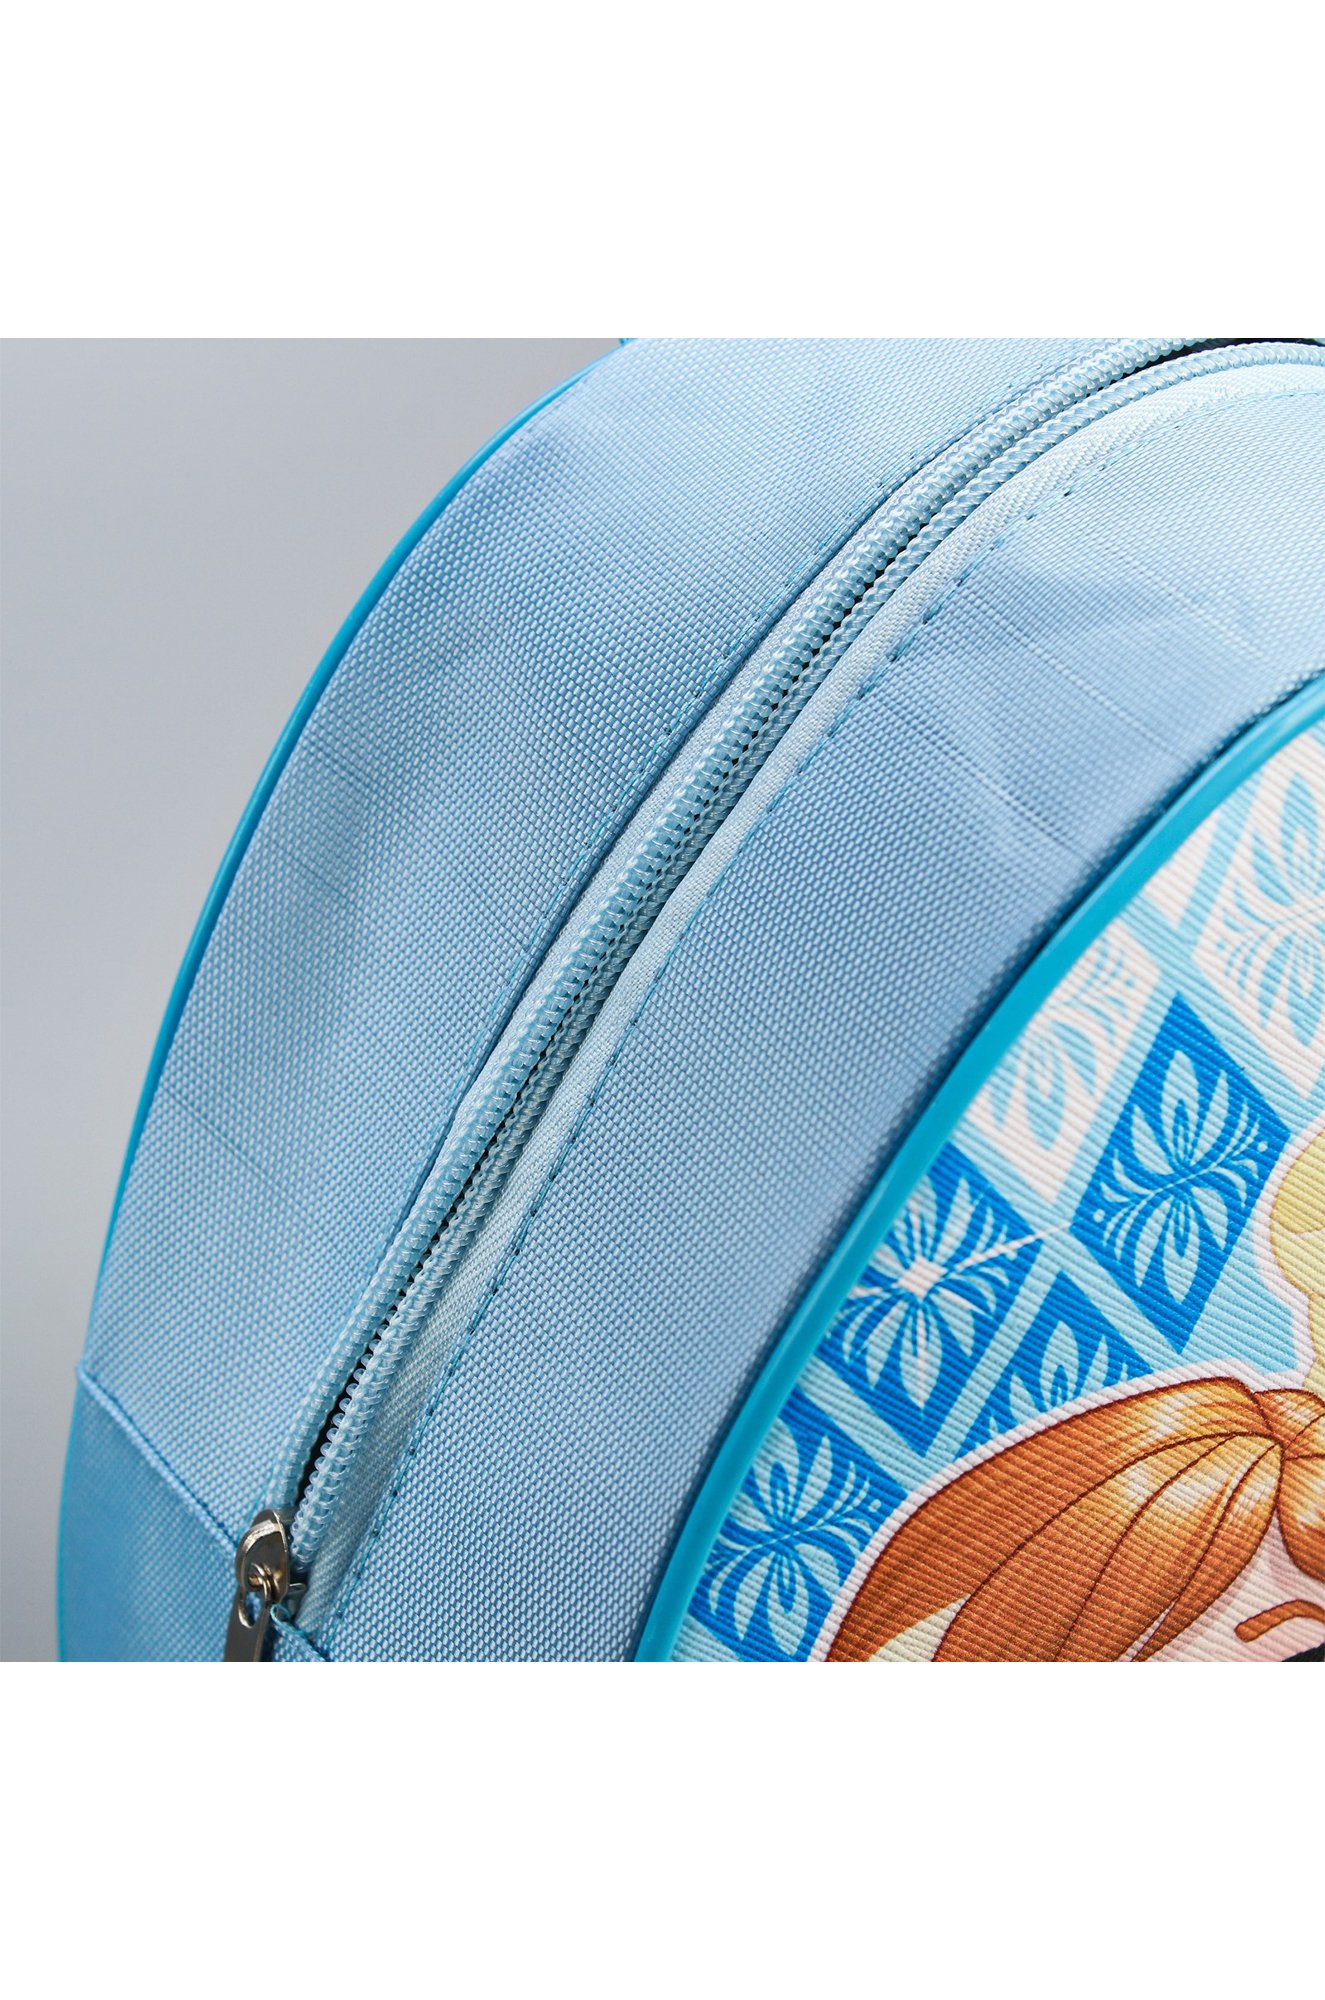 Рюкзак для девочки Disney